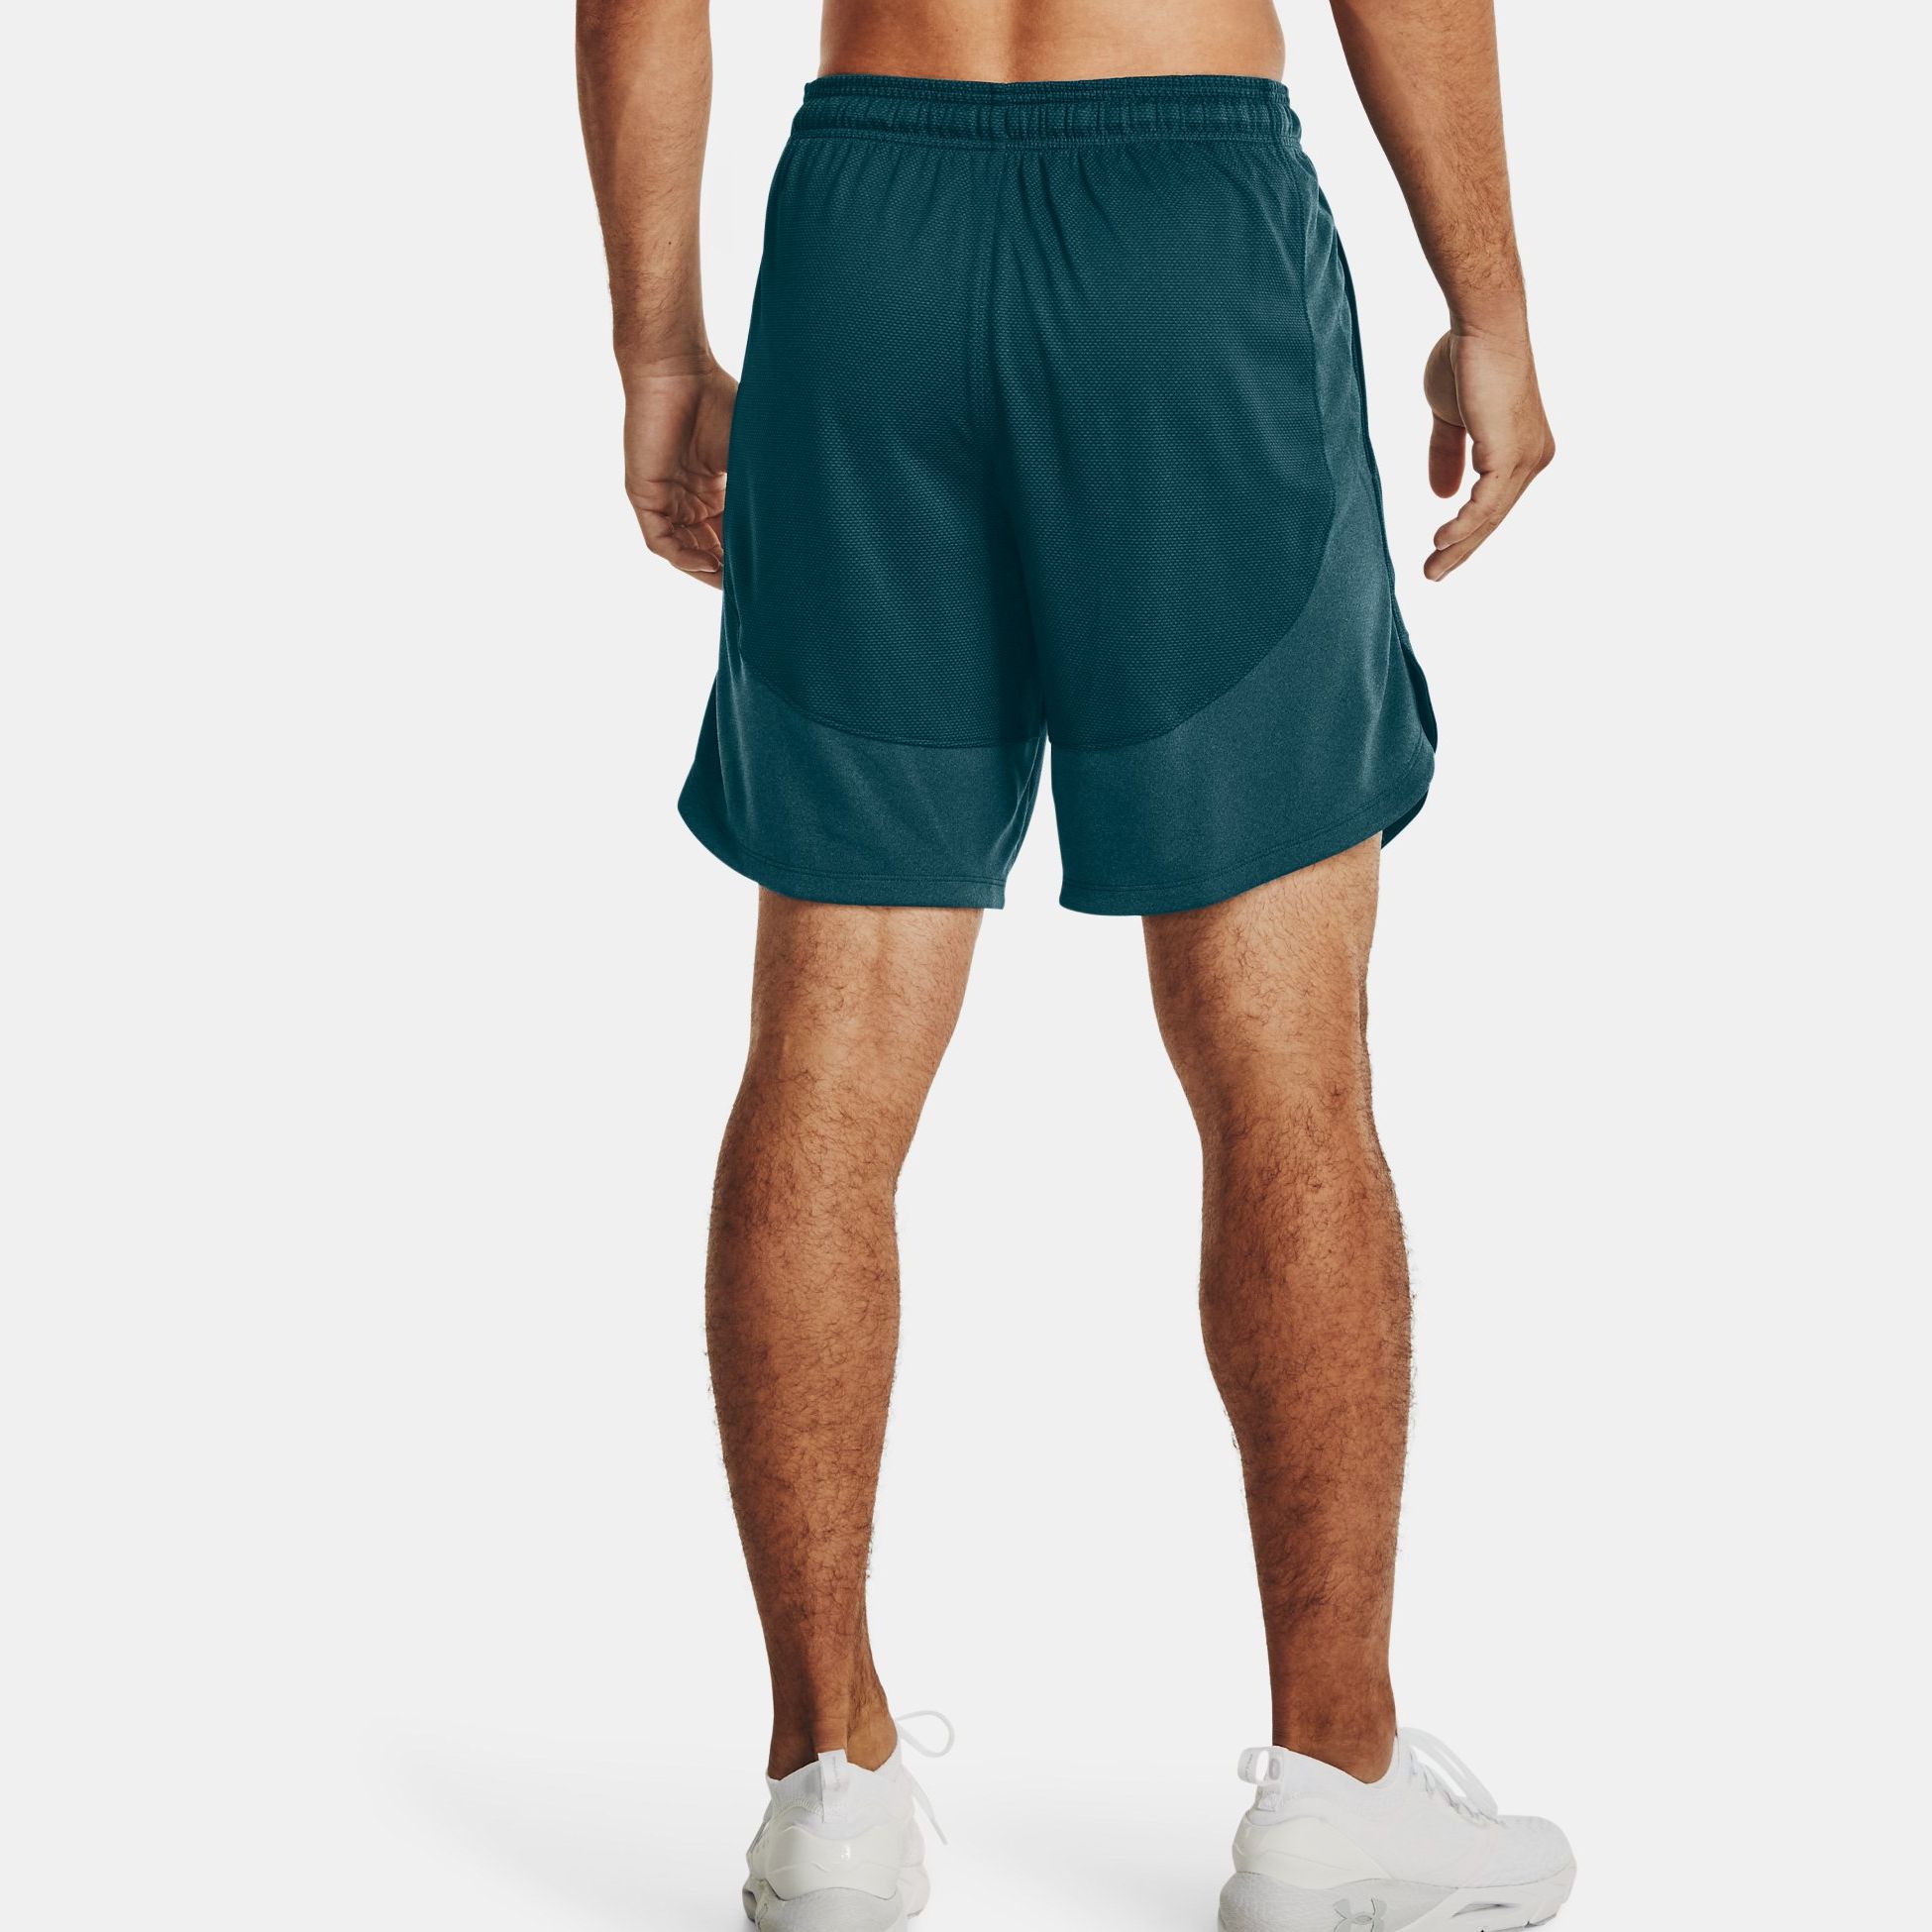 Shorts -  under armour UA Knit Performance Training Shorts 1641